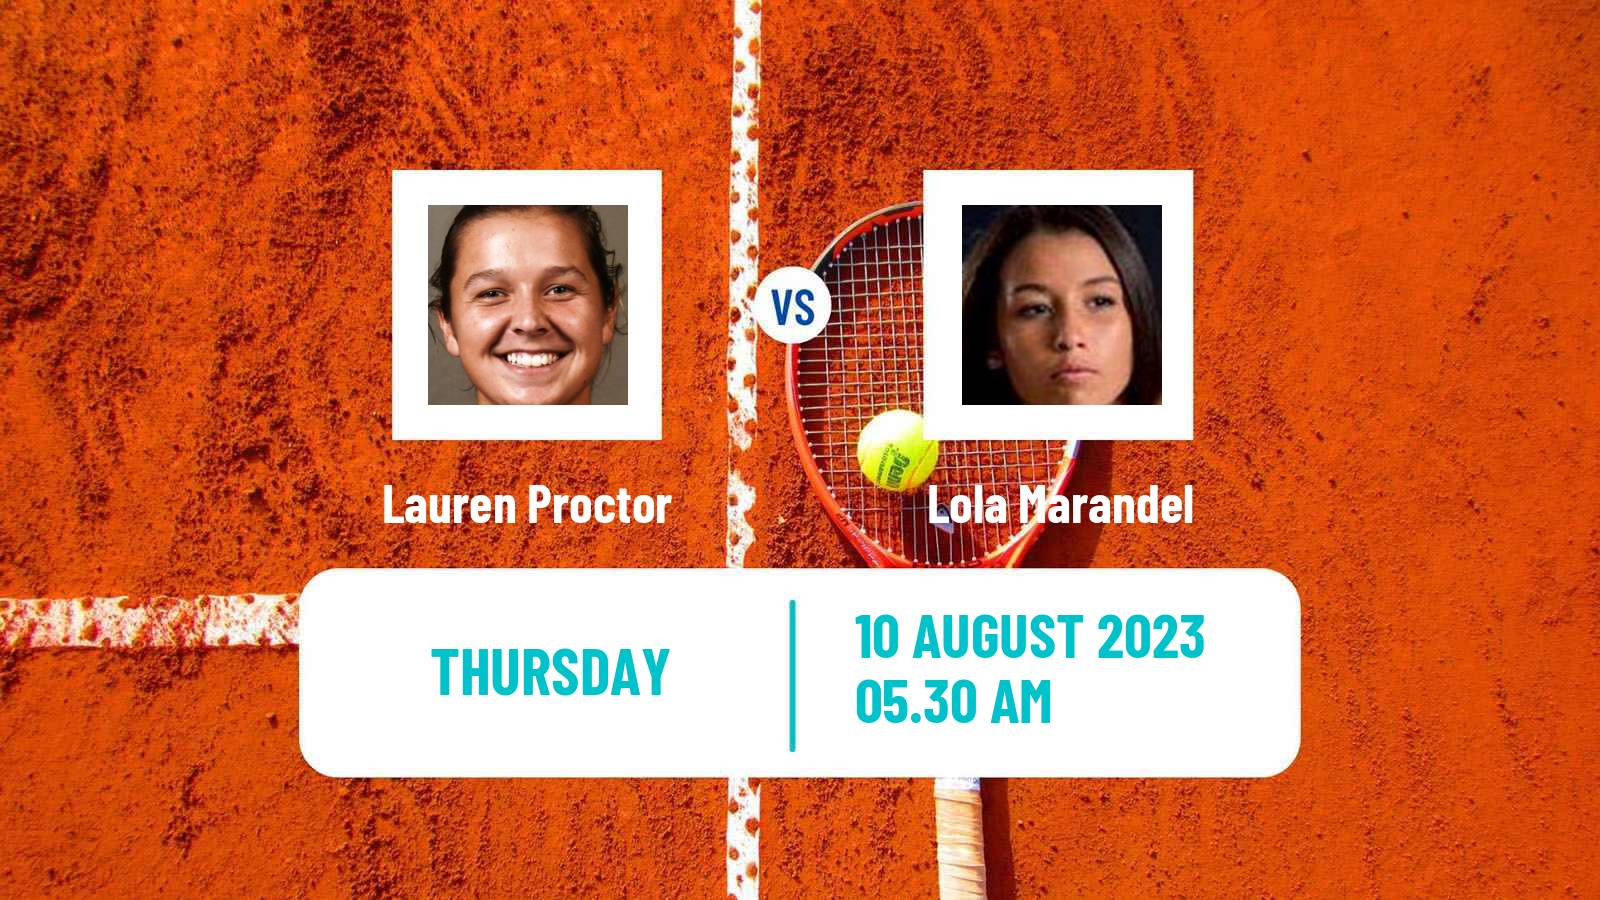 Tennis ITF W15 Monastir 22 Women Lauren Proctor - Lola Marandel